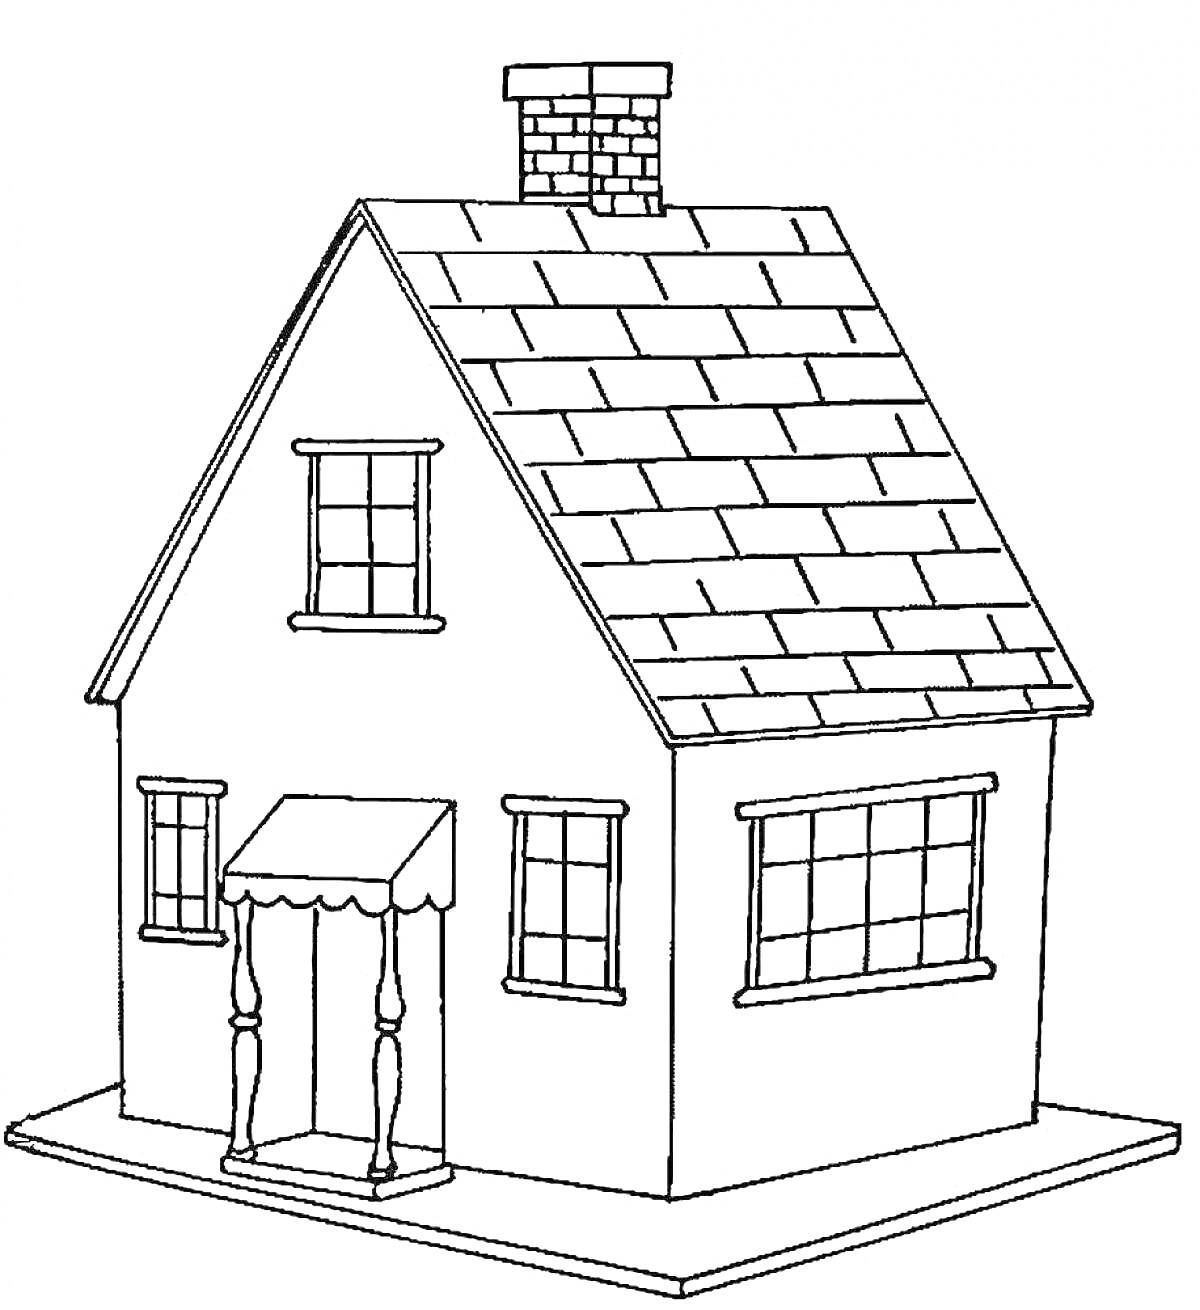 Раскраска Дом с двускатной крышей, крыльцом с козырьком, дымоходом и окнами